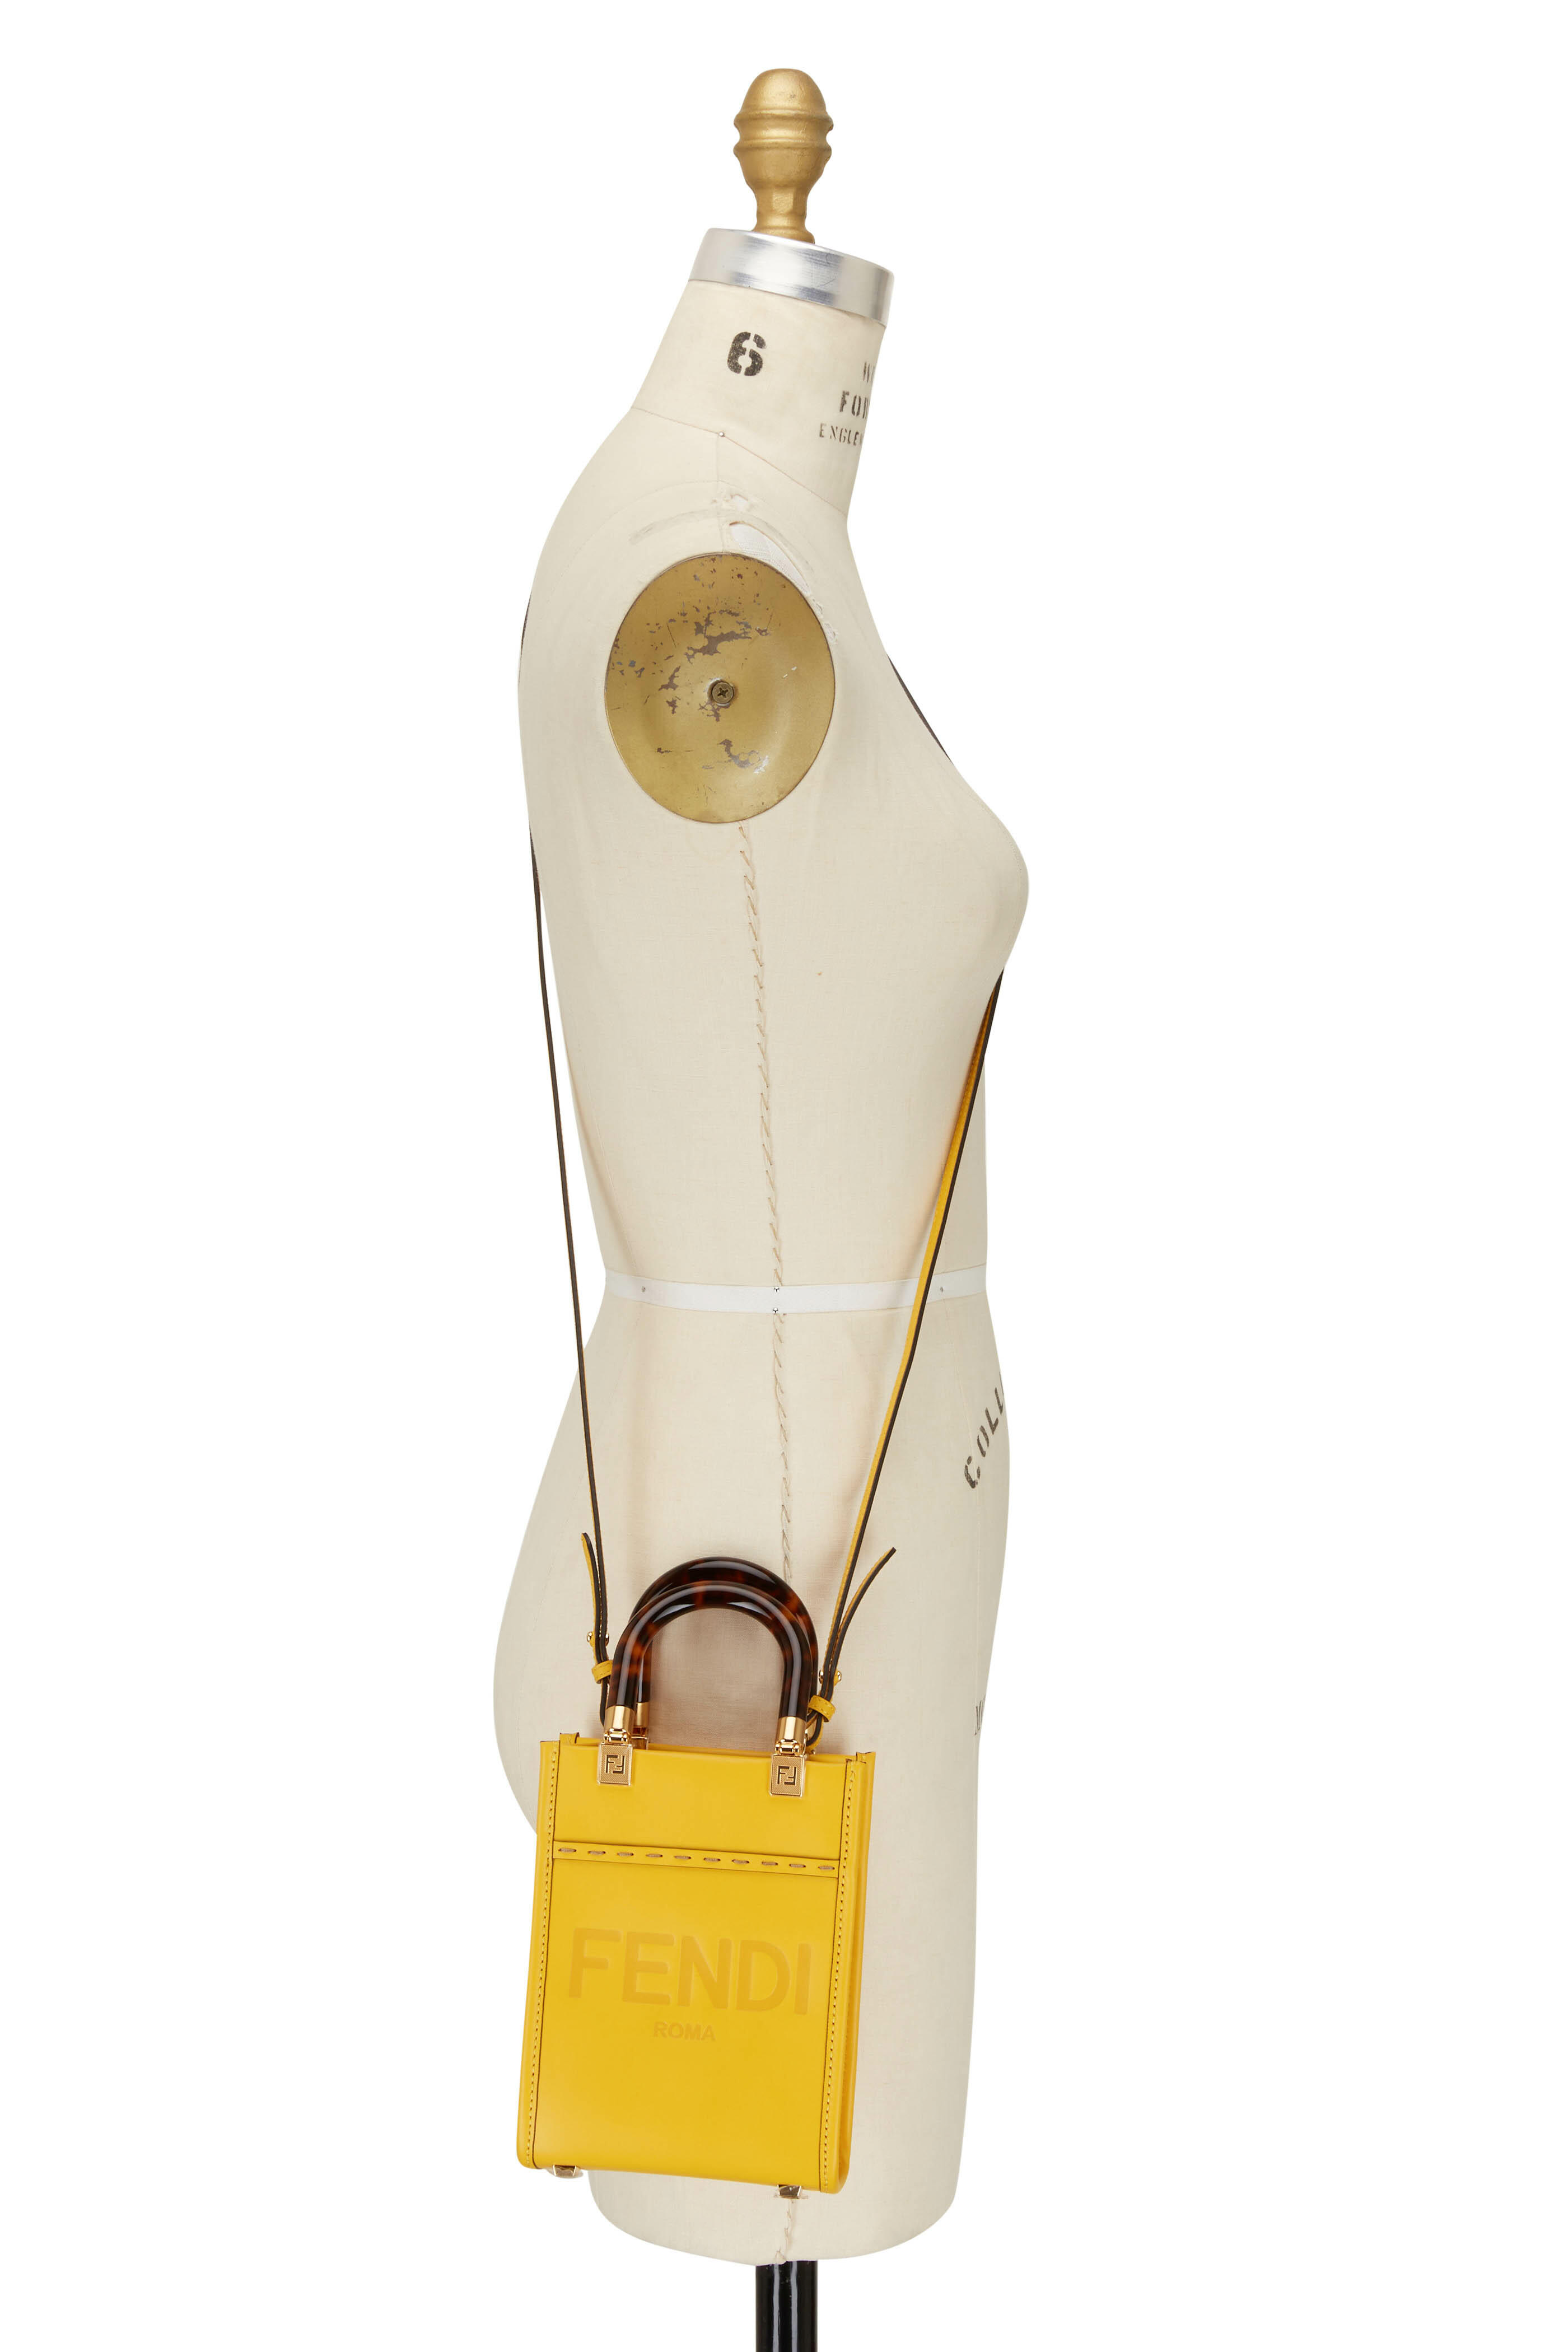 Mini Sunshine Shopper - Yellow leather mini-bag